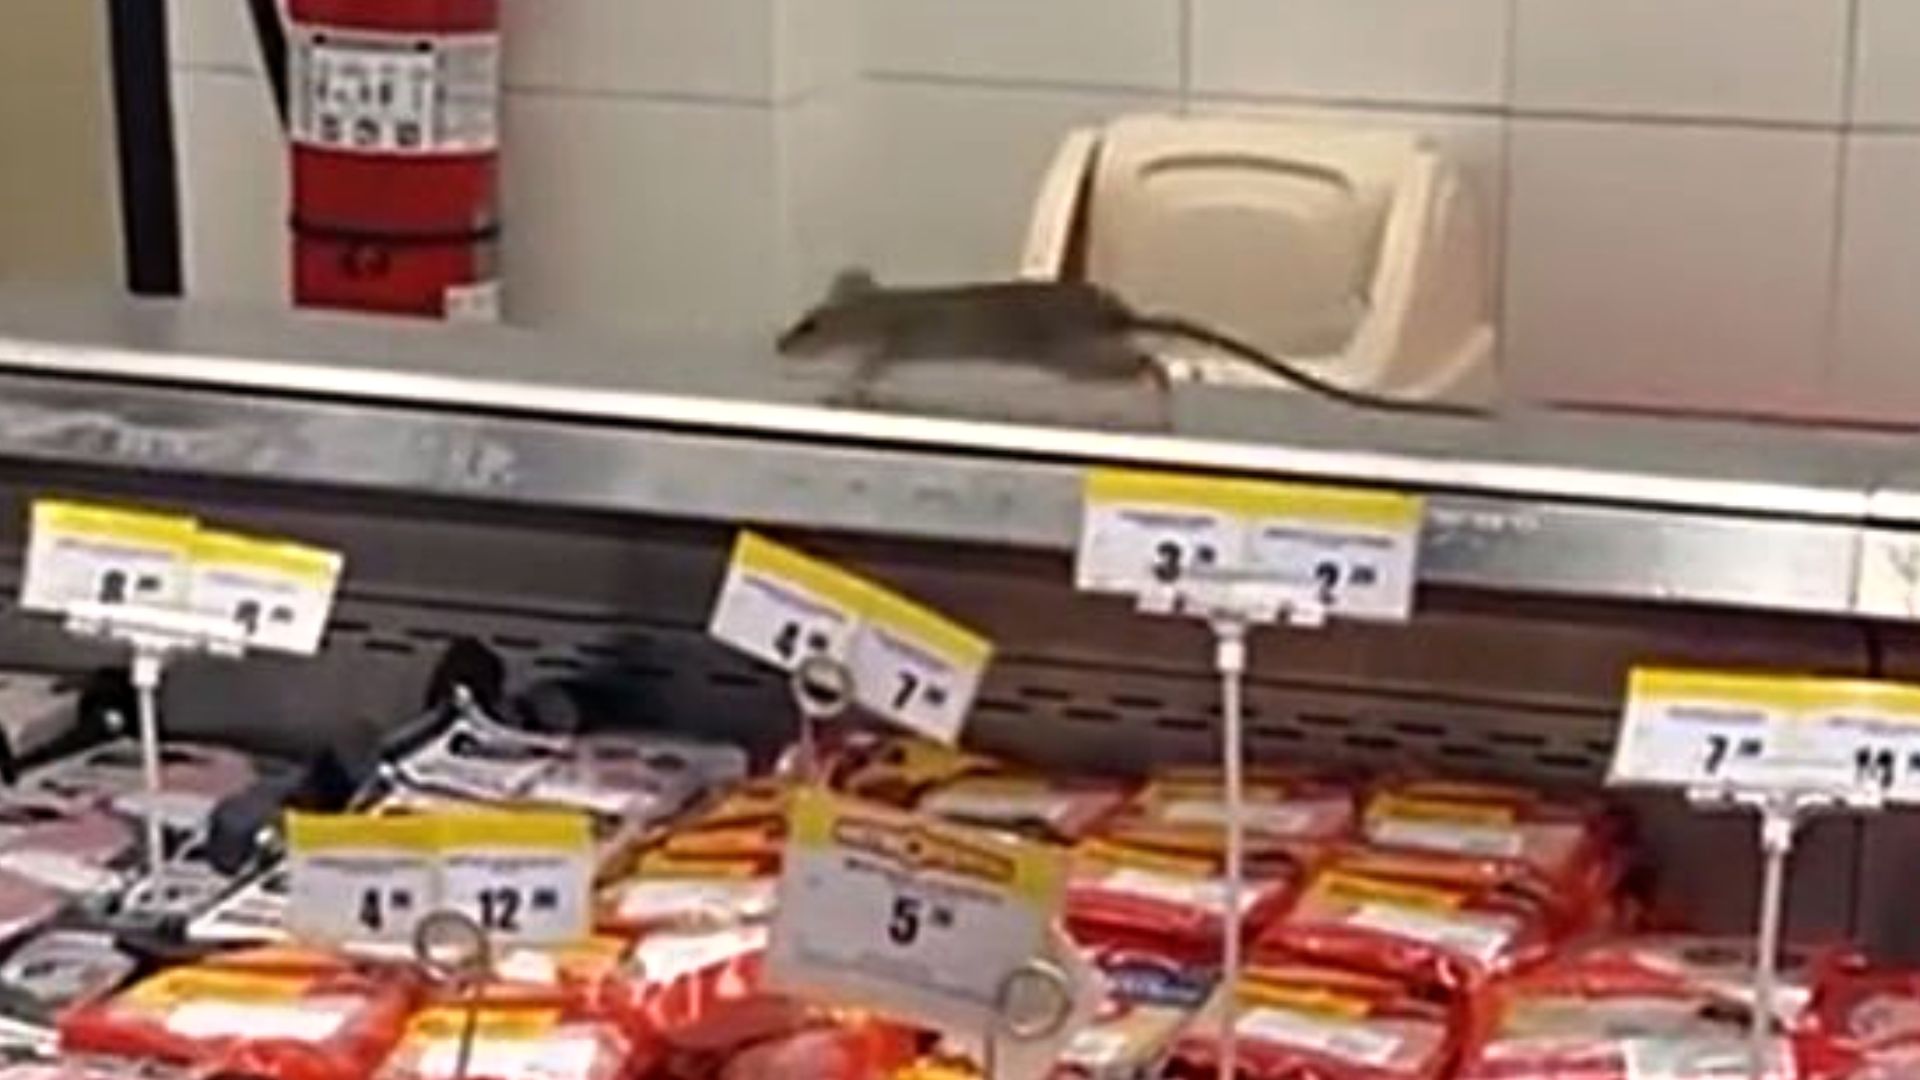 Los roedores se encontraban sobre la zona de embutidos del conocido supermercado. Hasta el momento no existe pronunciamiento oficial de la empresa. (Captura)